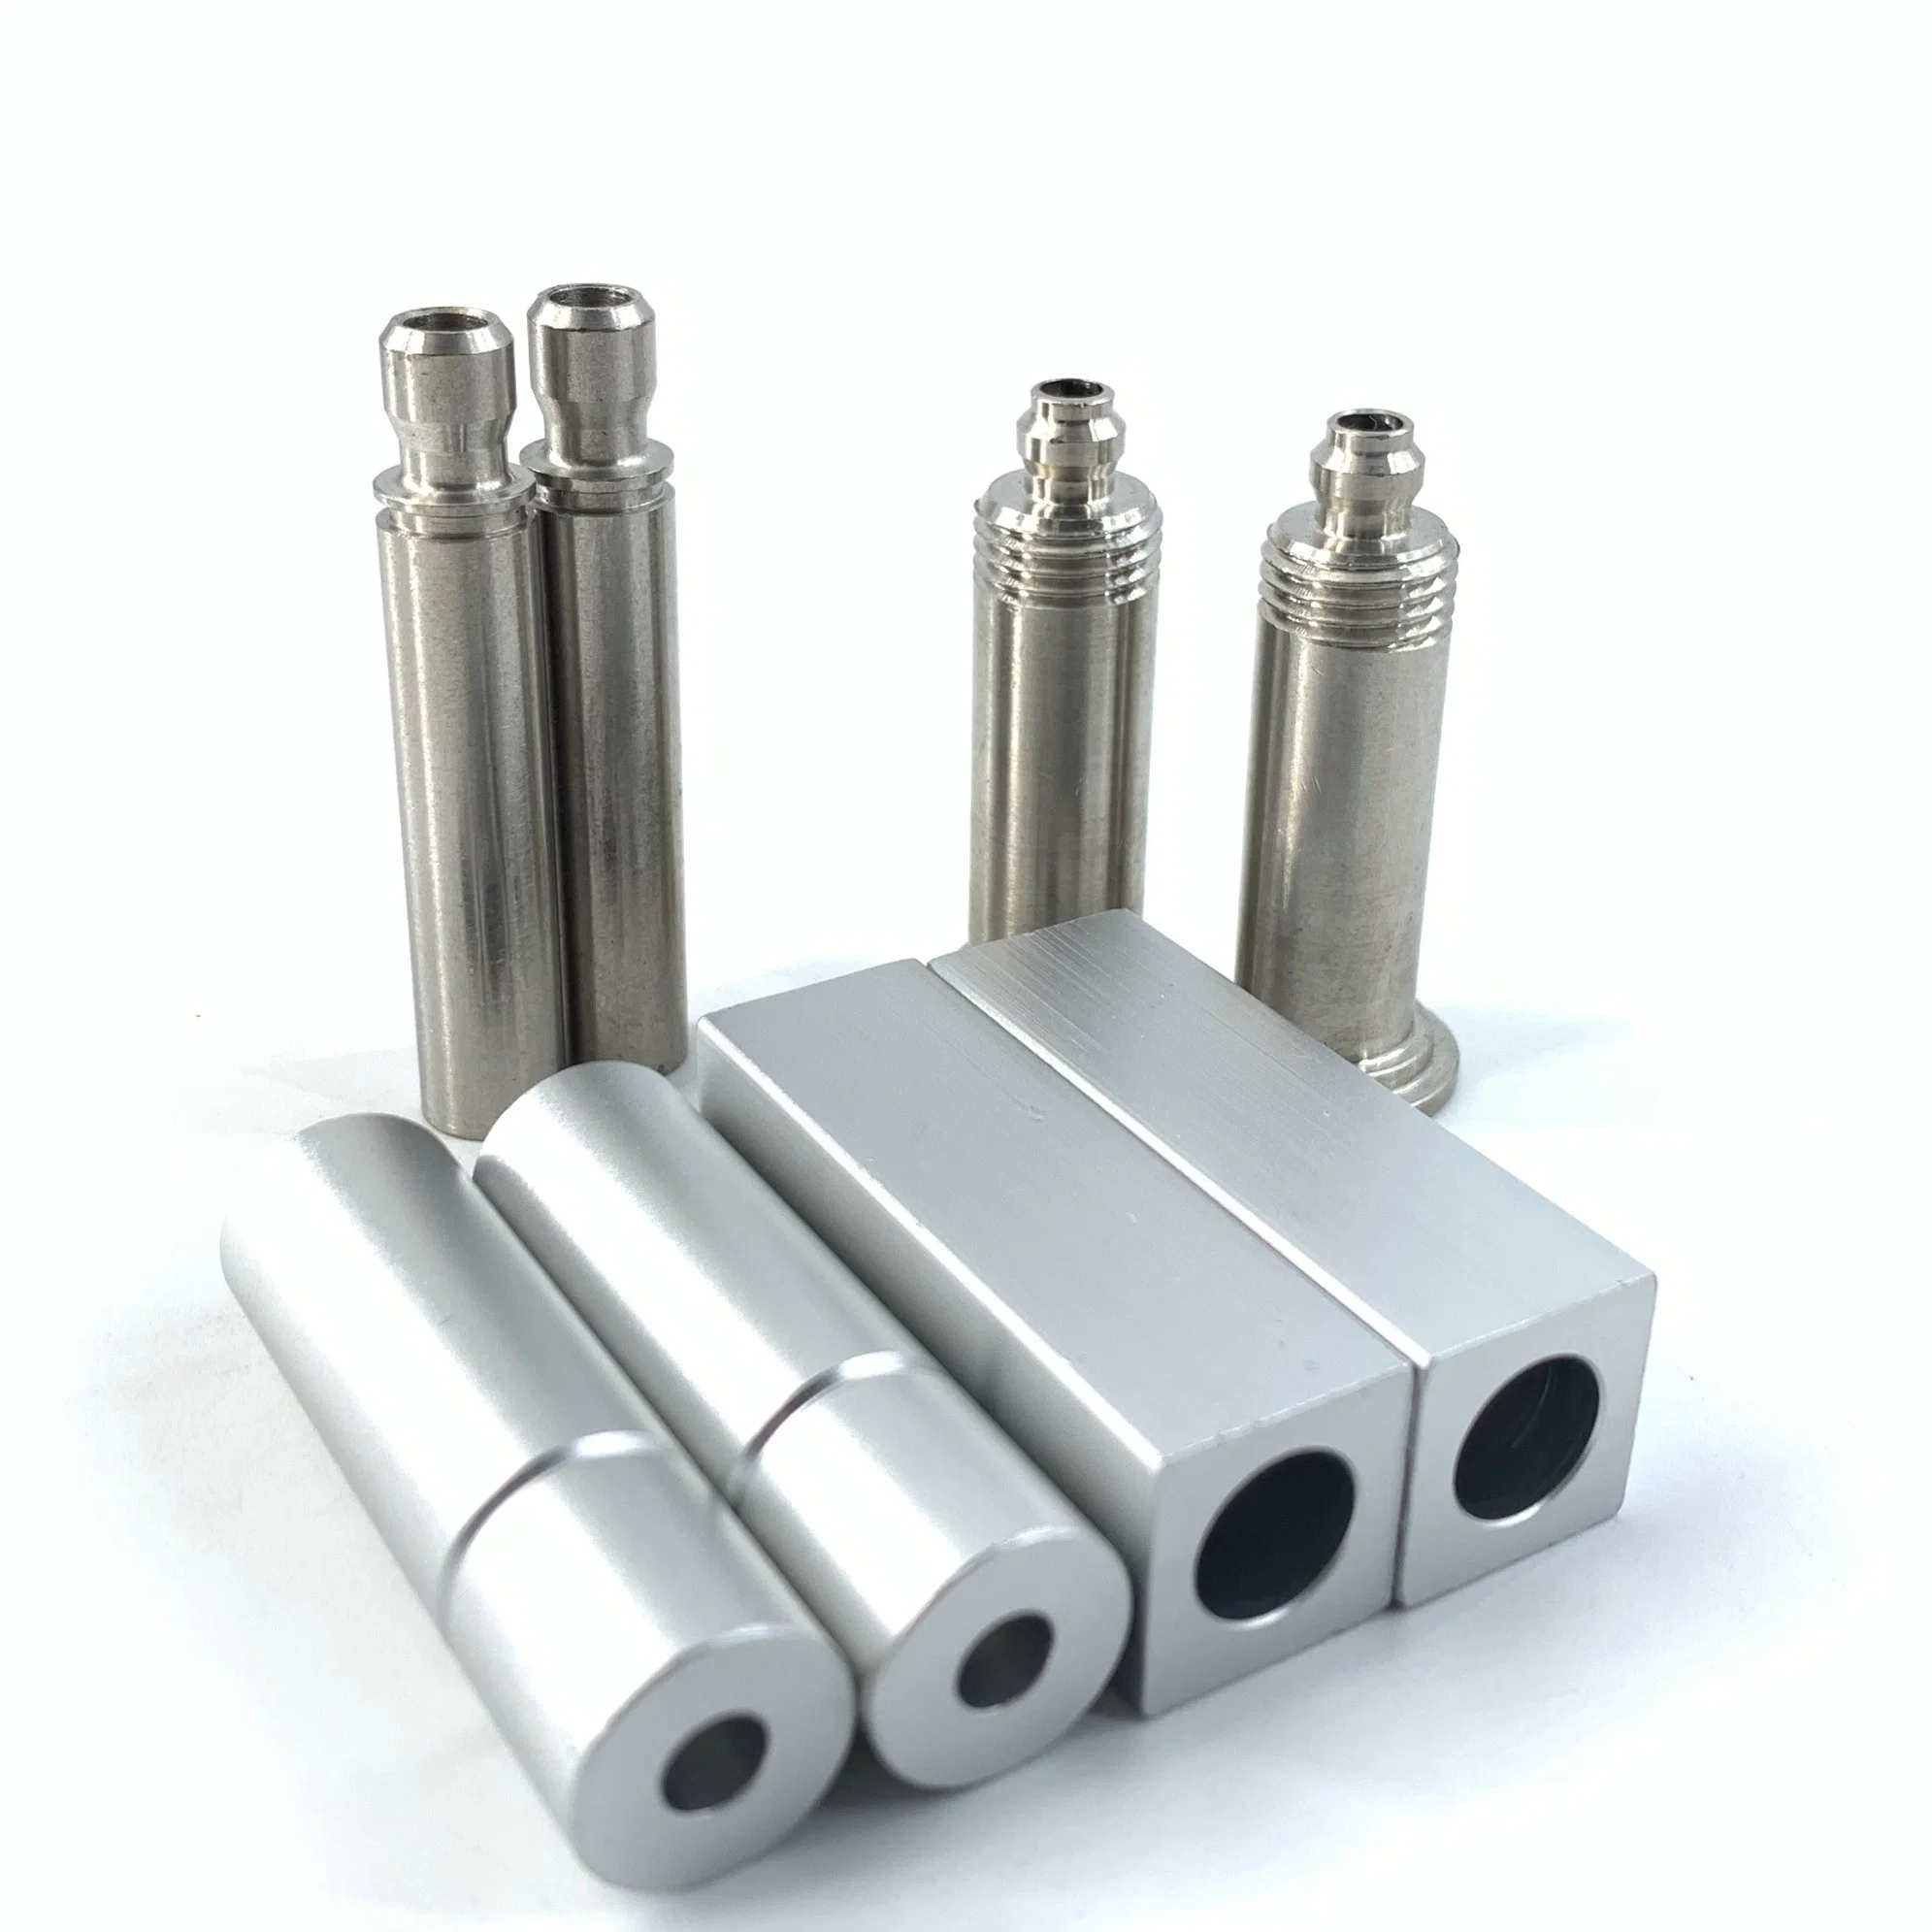 Métal sur mesure aluminium acier inoxydable Fabrication CNC accessoire de service bon marché Pièces de téléphonie cellulaire pièces de rechange mécaniques